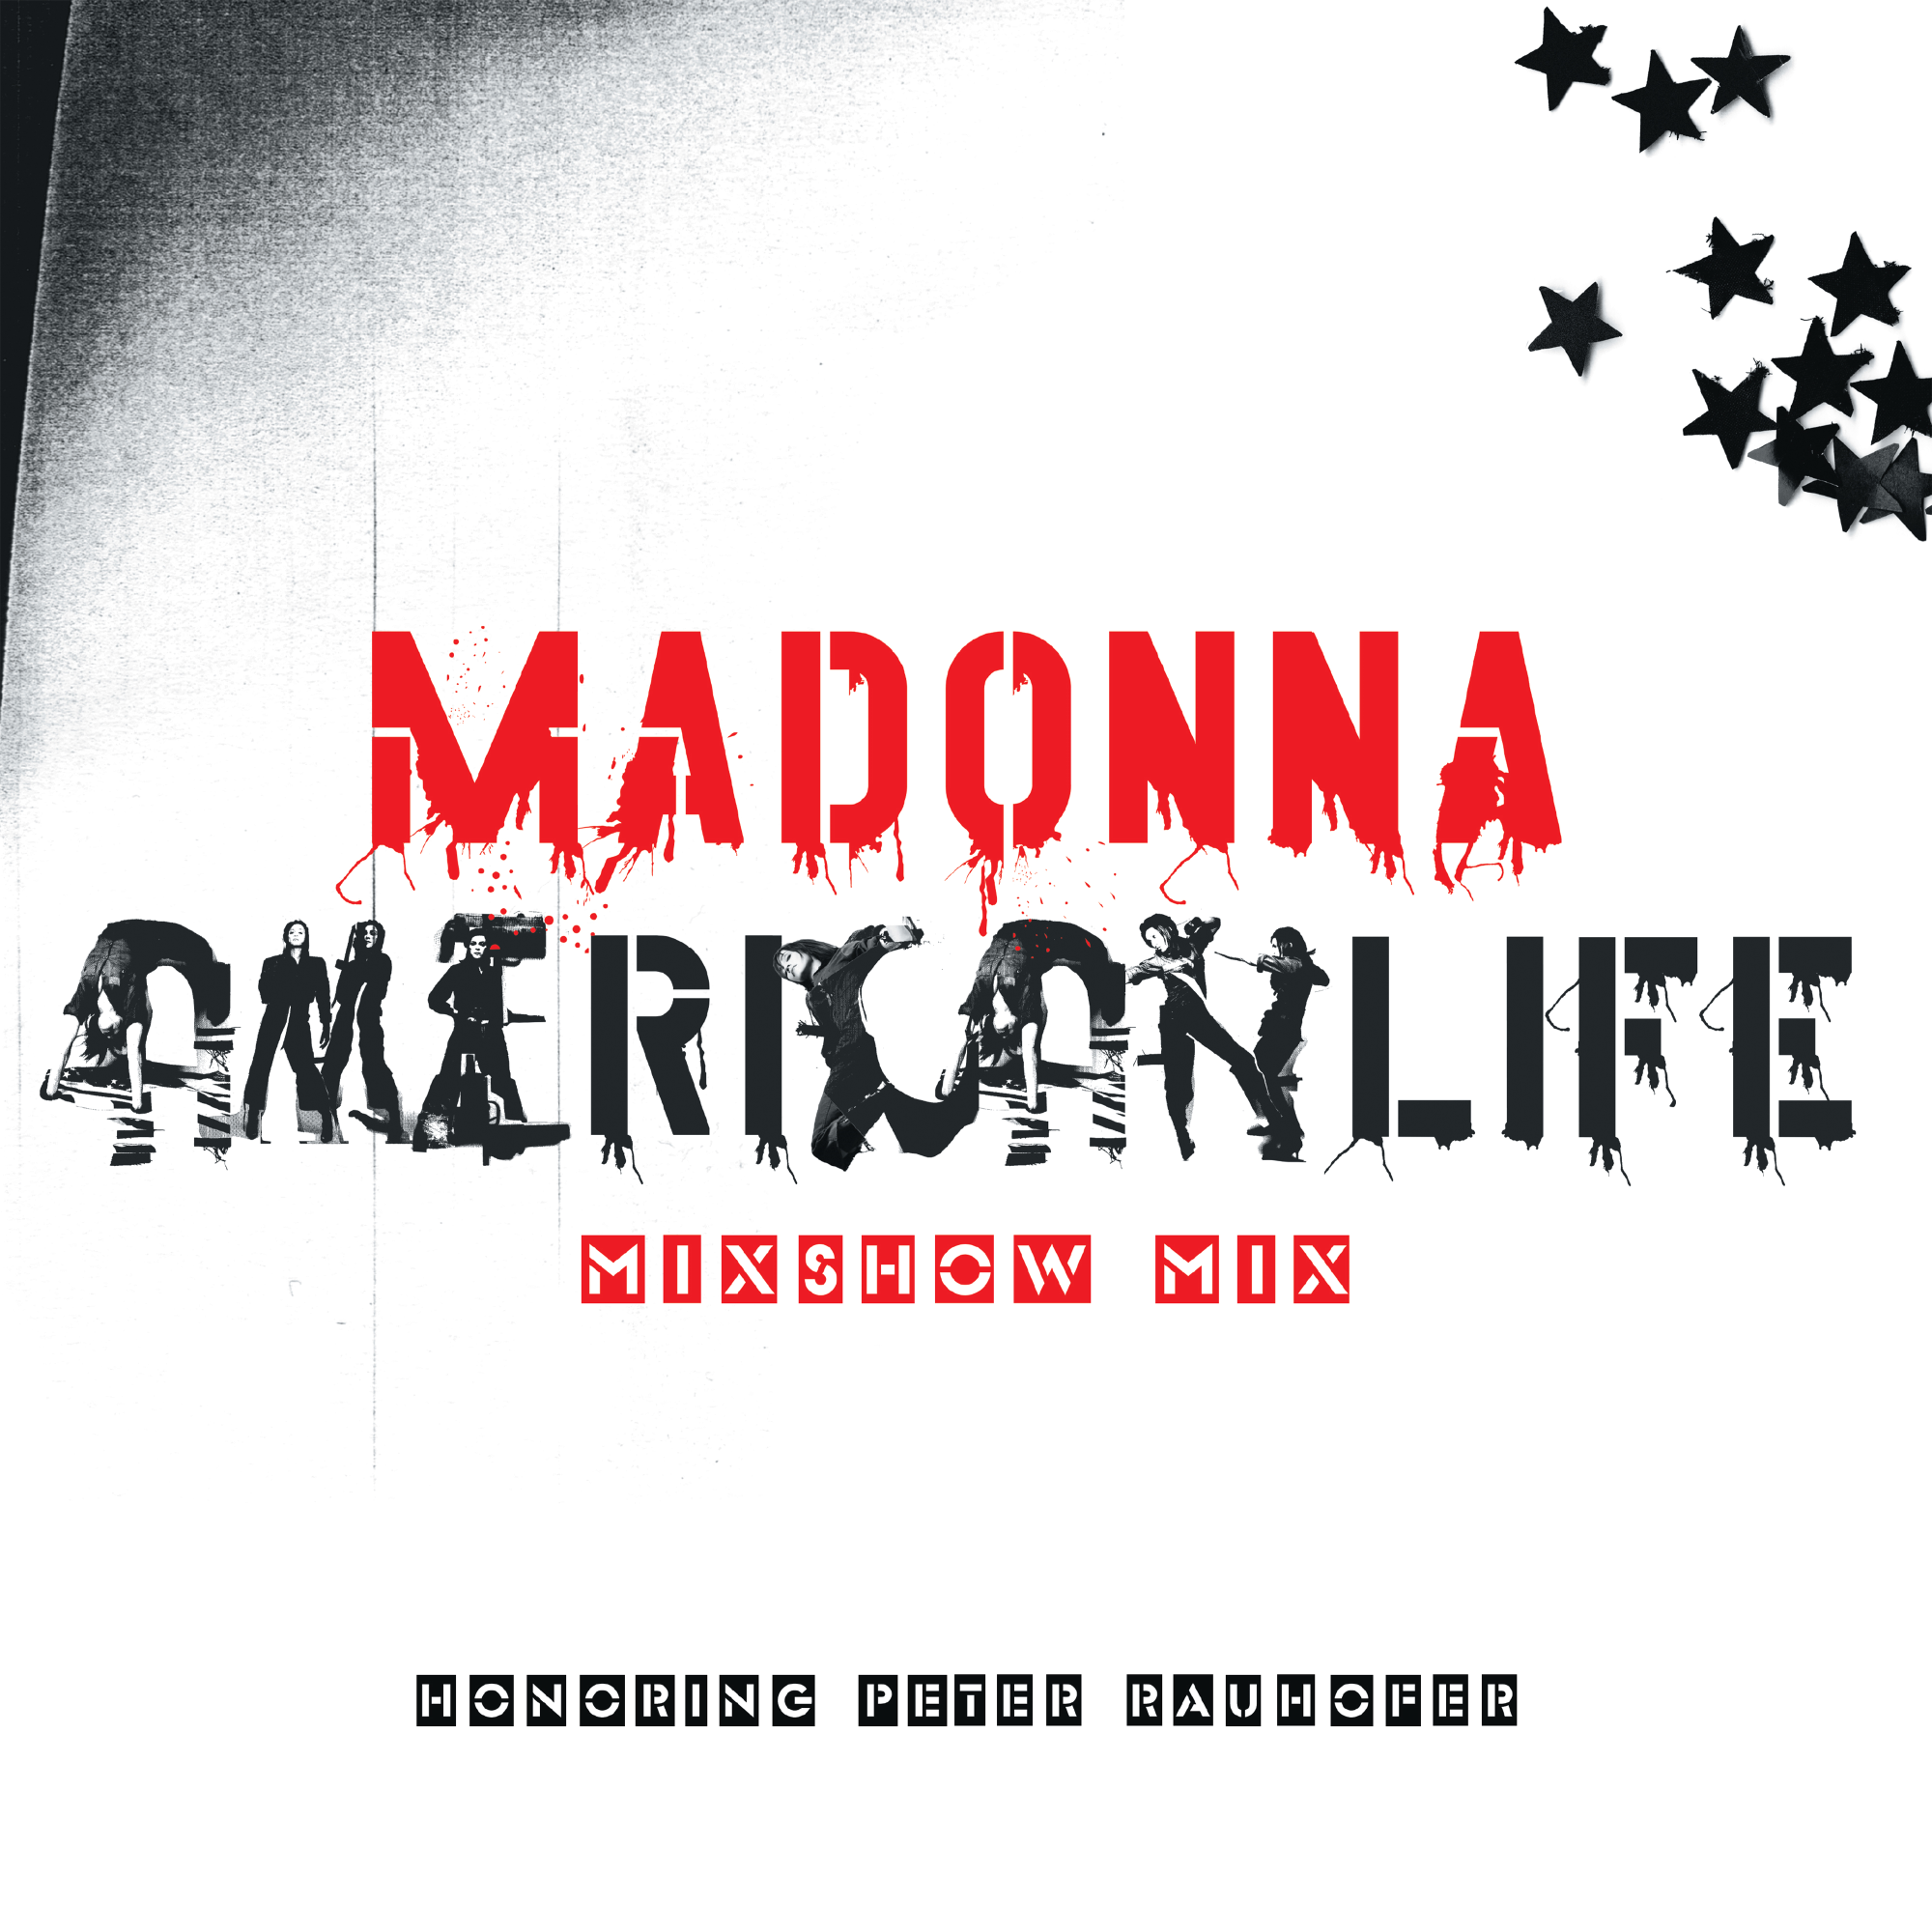 Vinile Madonna - American Life (Mixshow Mix) (Rsd 2023) NUOVO SIGILLATO, EDIZIONE DEL 21/04/2023 SUBITO DISPONIBILE